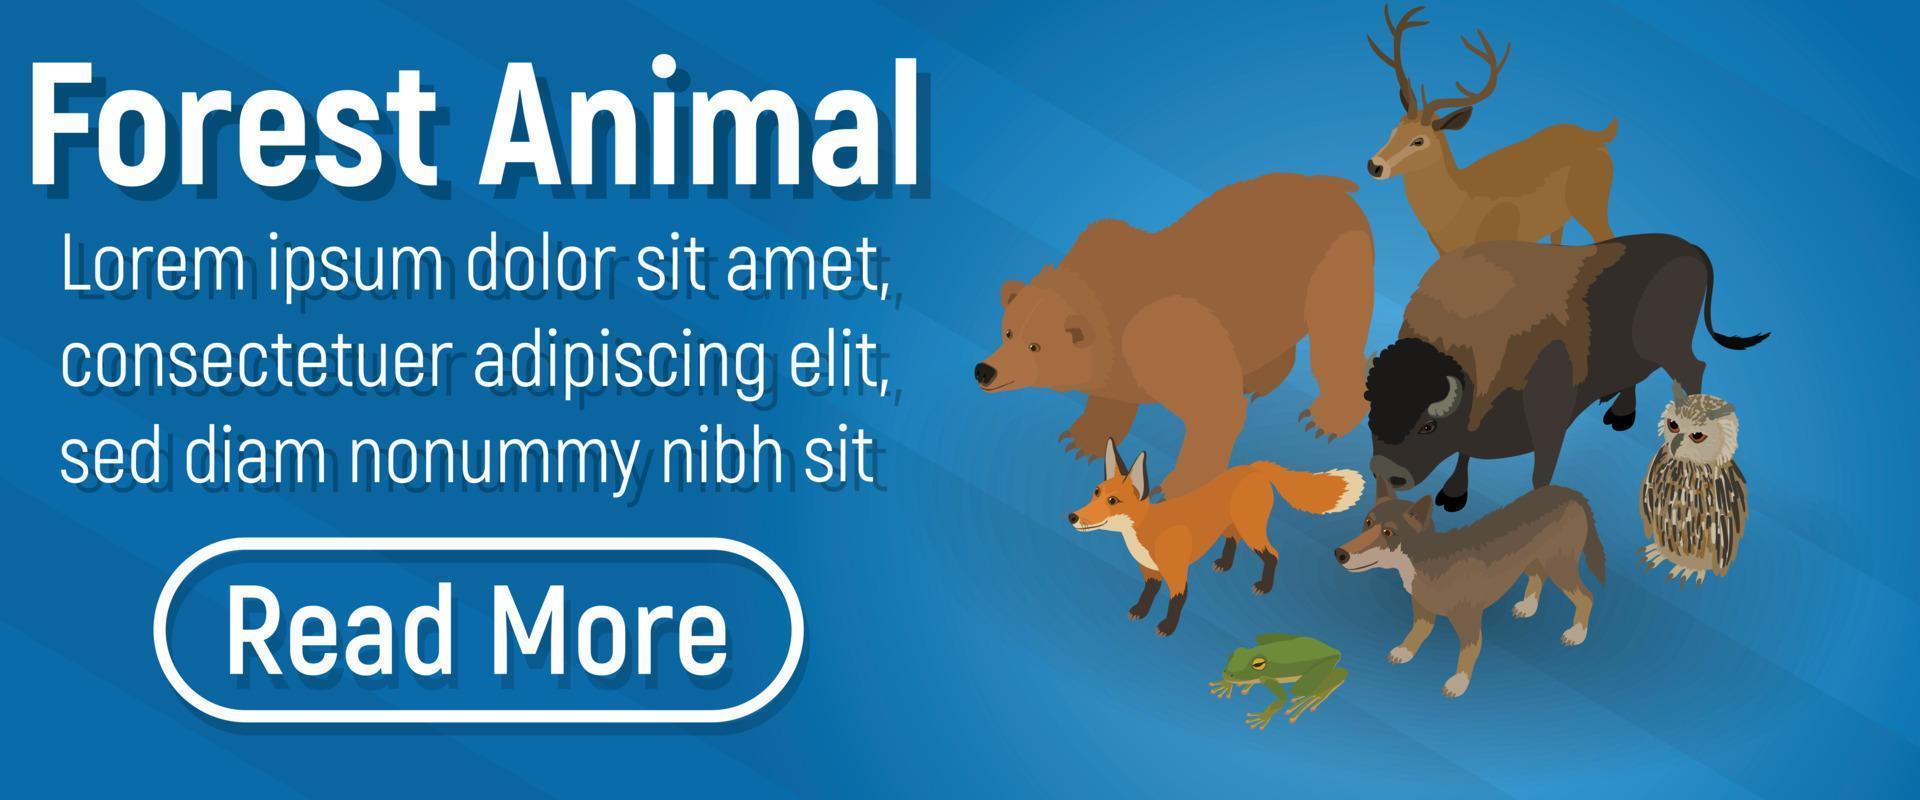 banner de conceito animal da floresta, estilo isométrico vetor